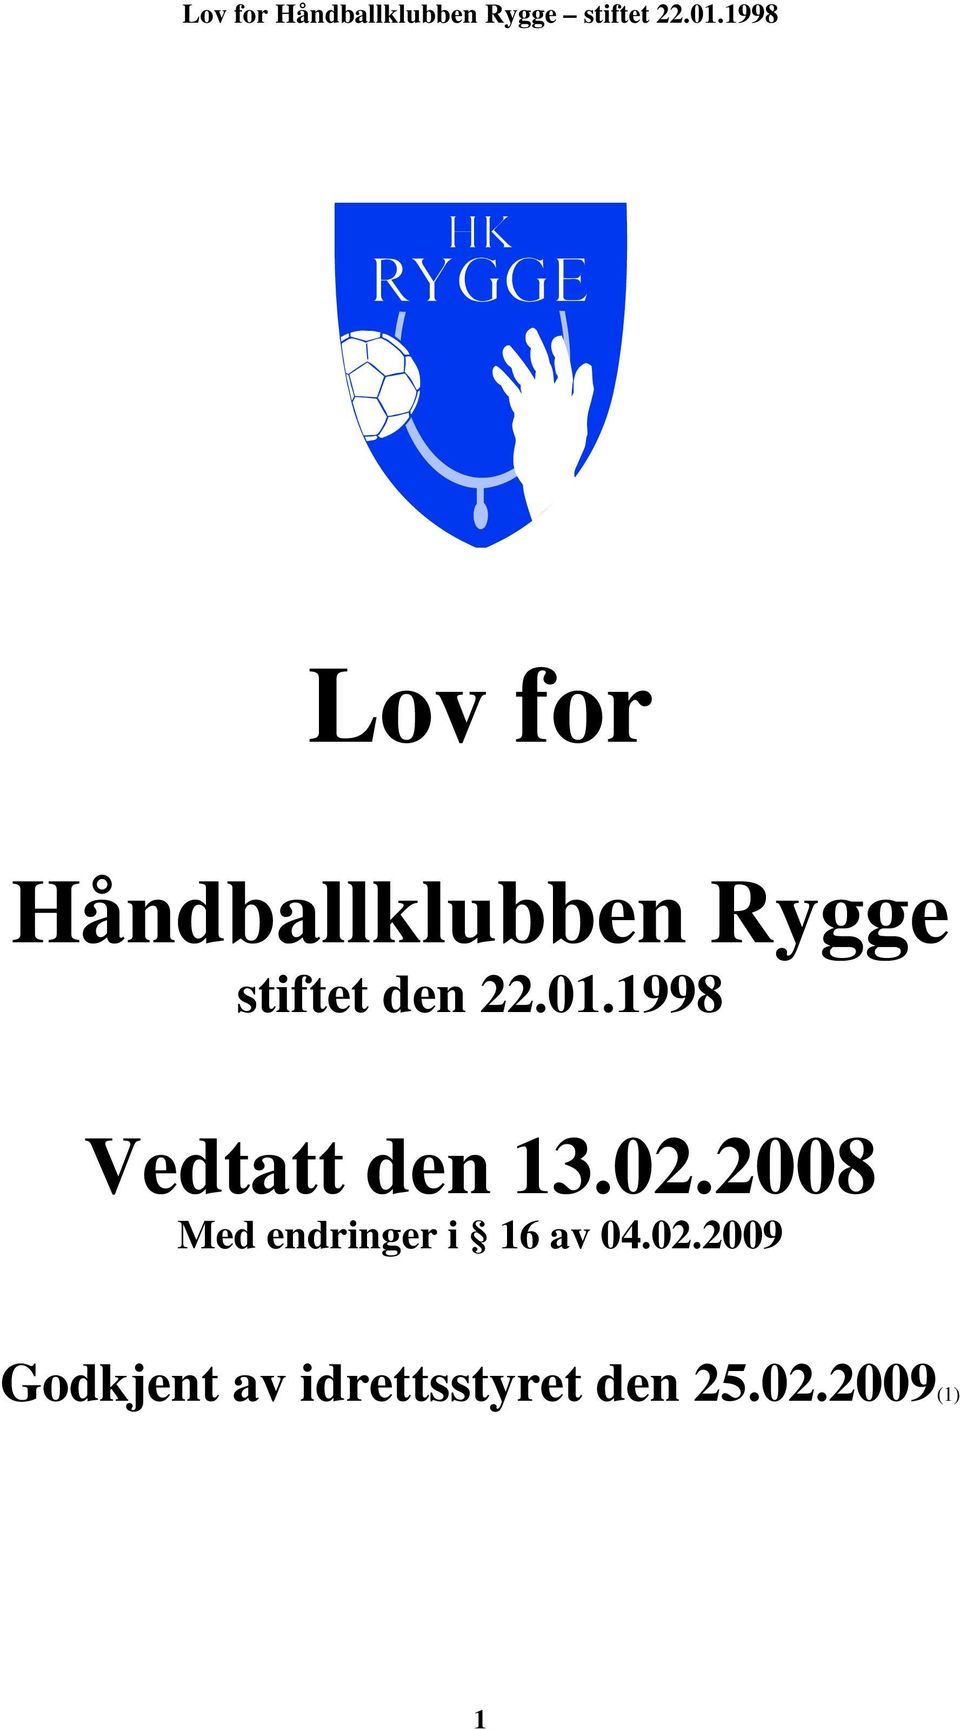 2008 Med endringer i 16 av 04.02.